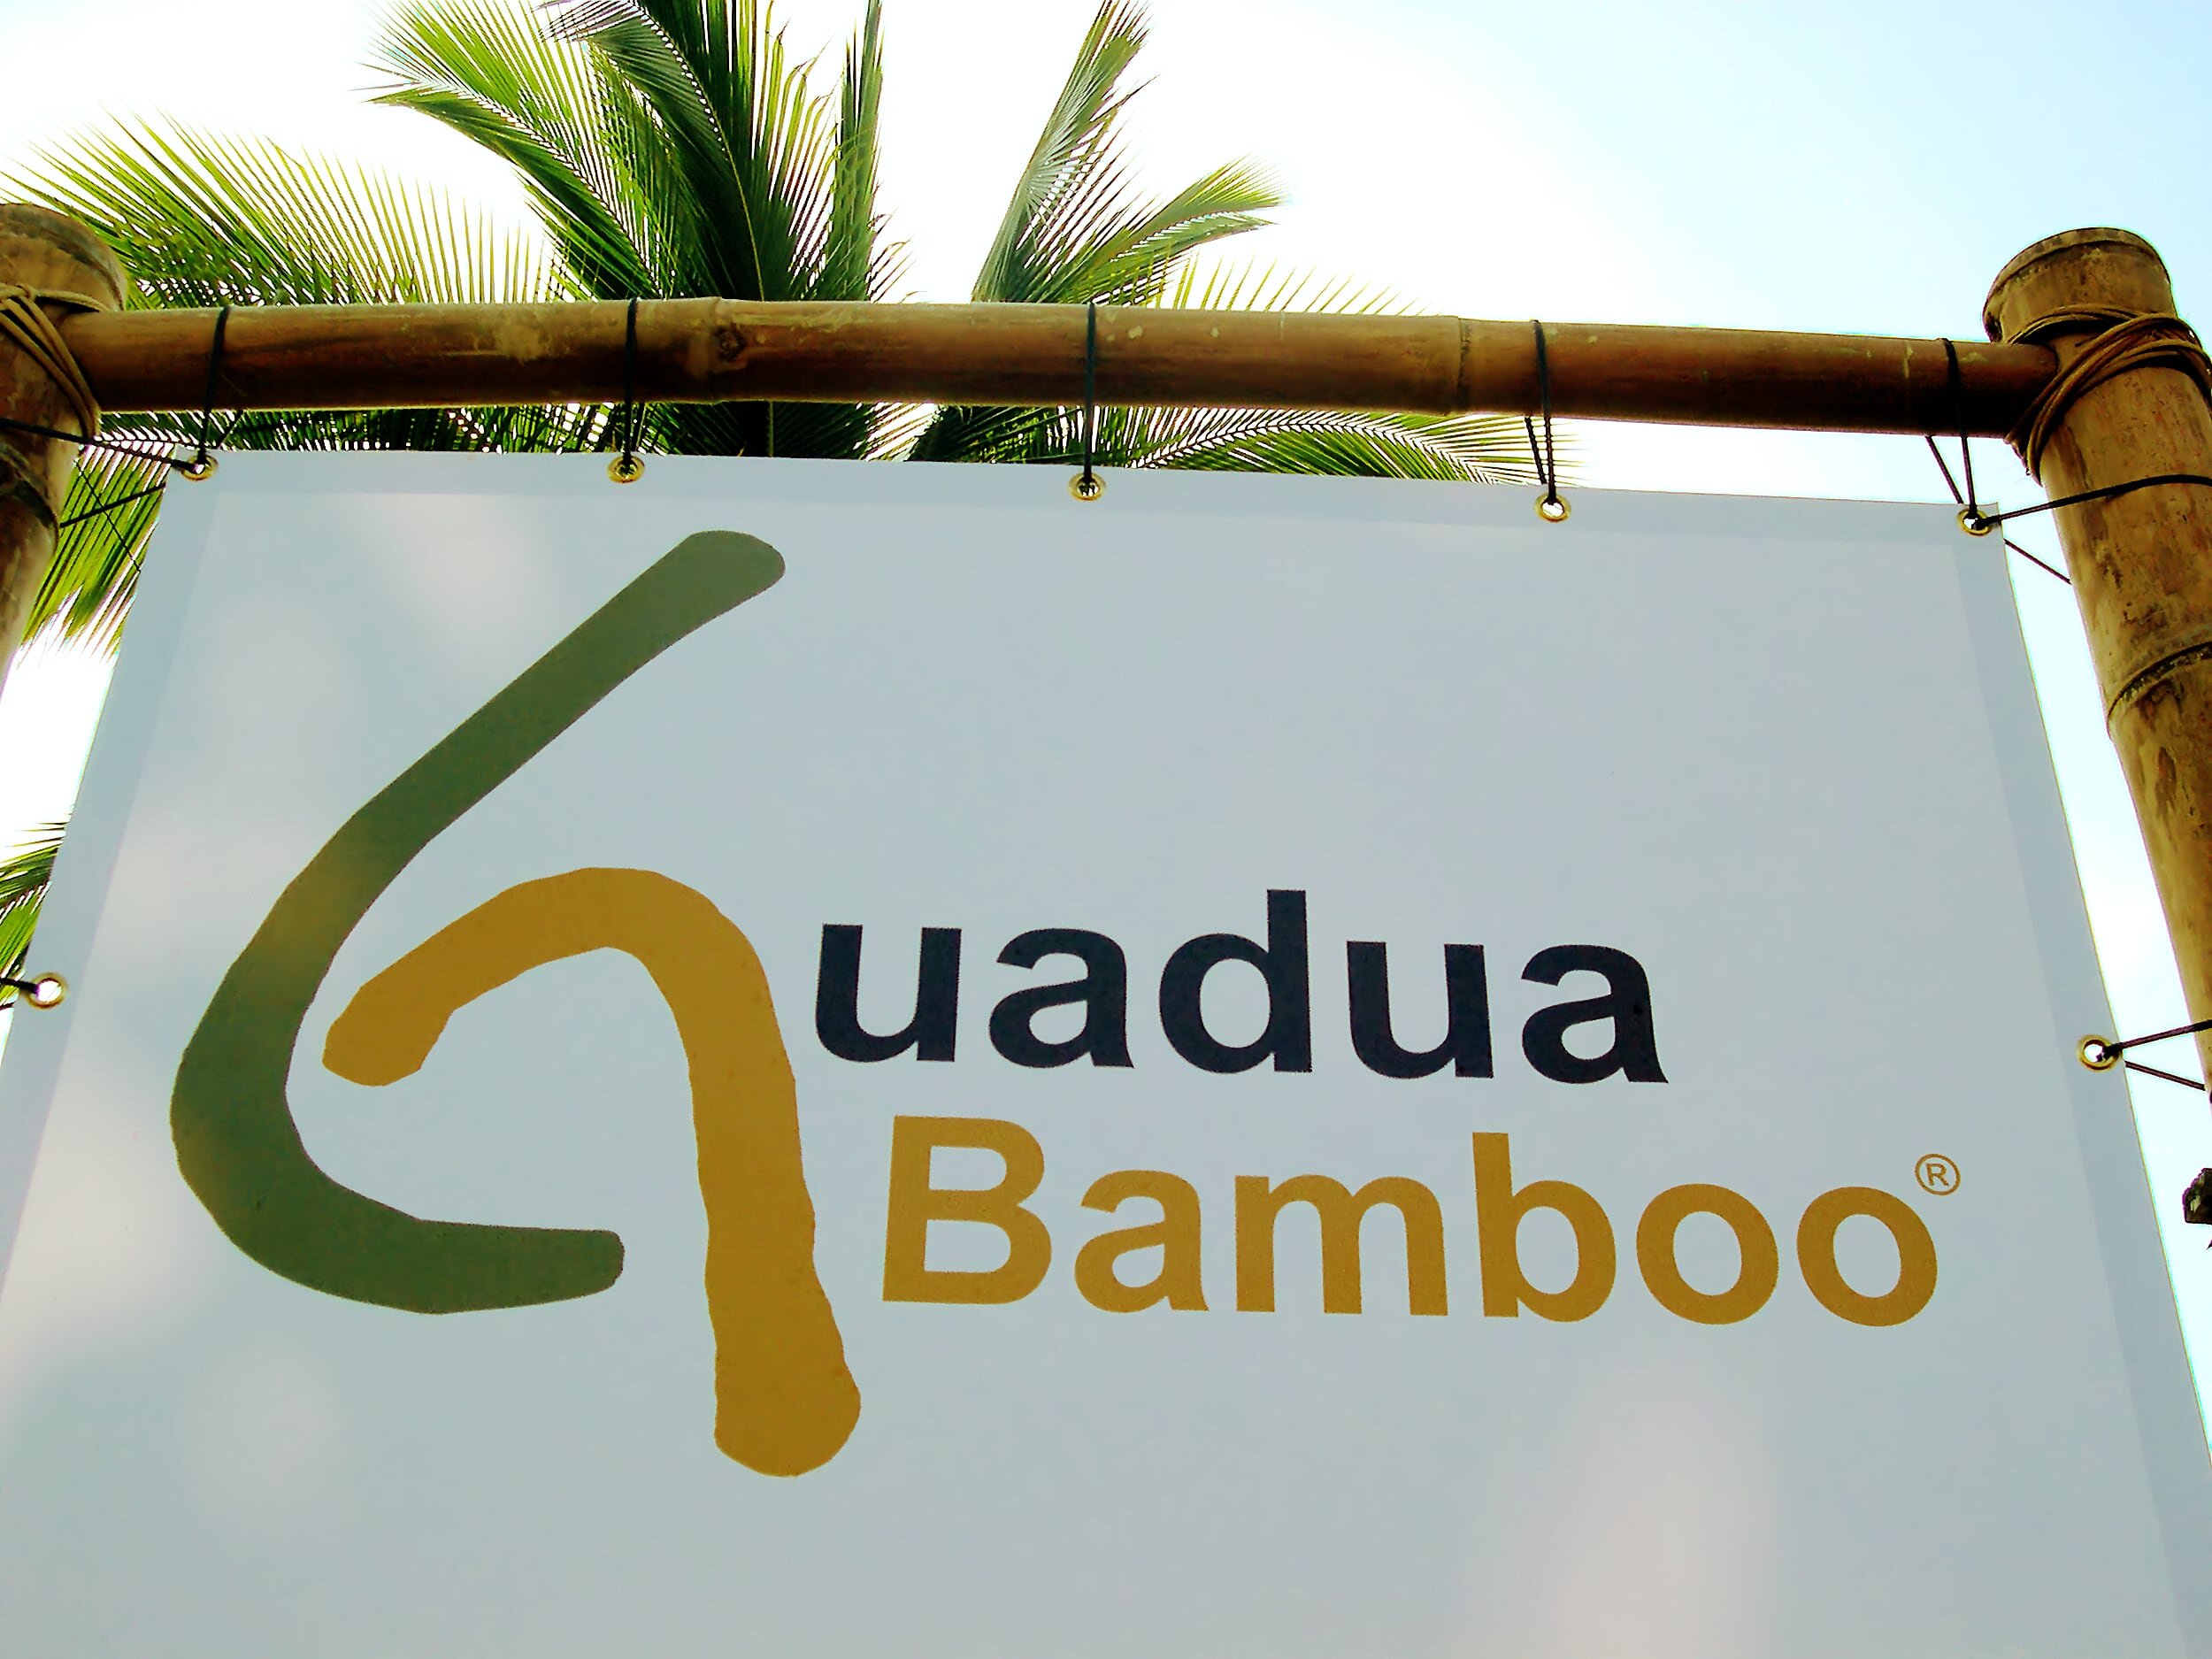 guadua-bamboo-street-banner.jpg